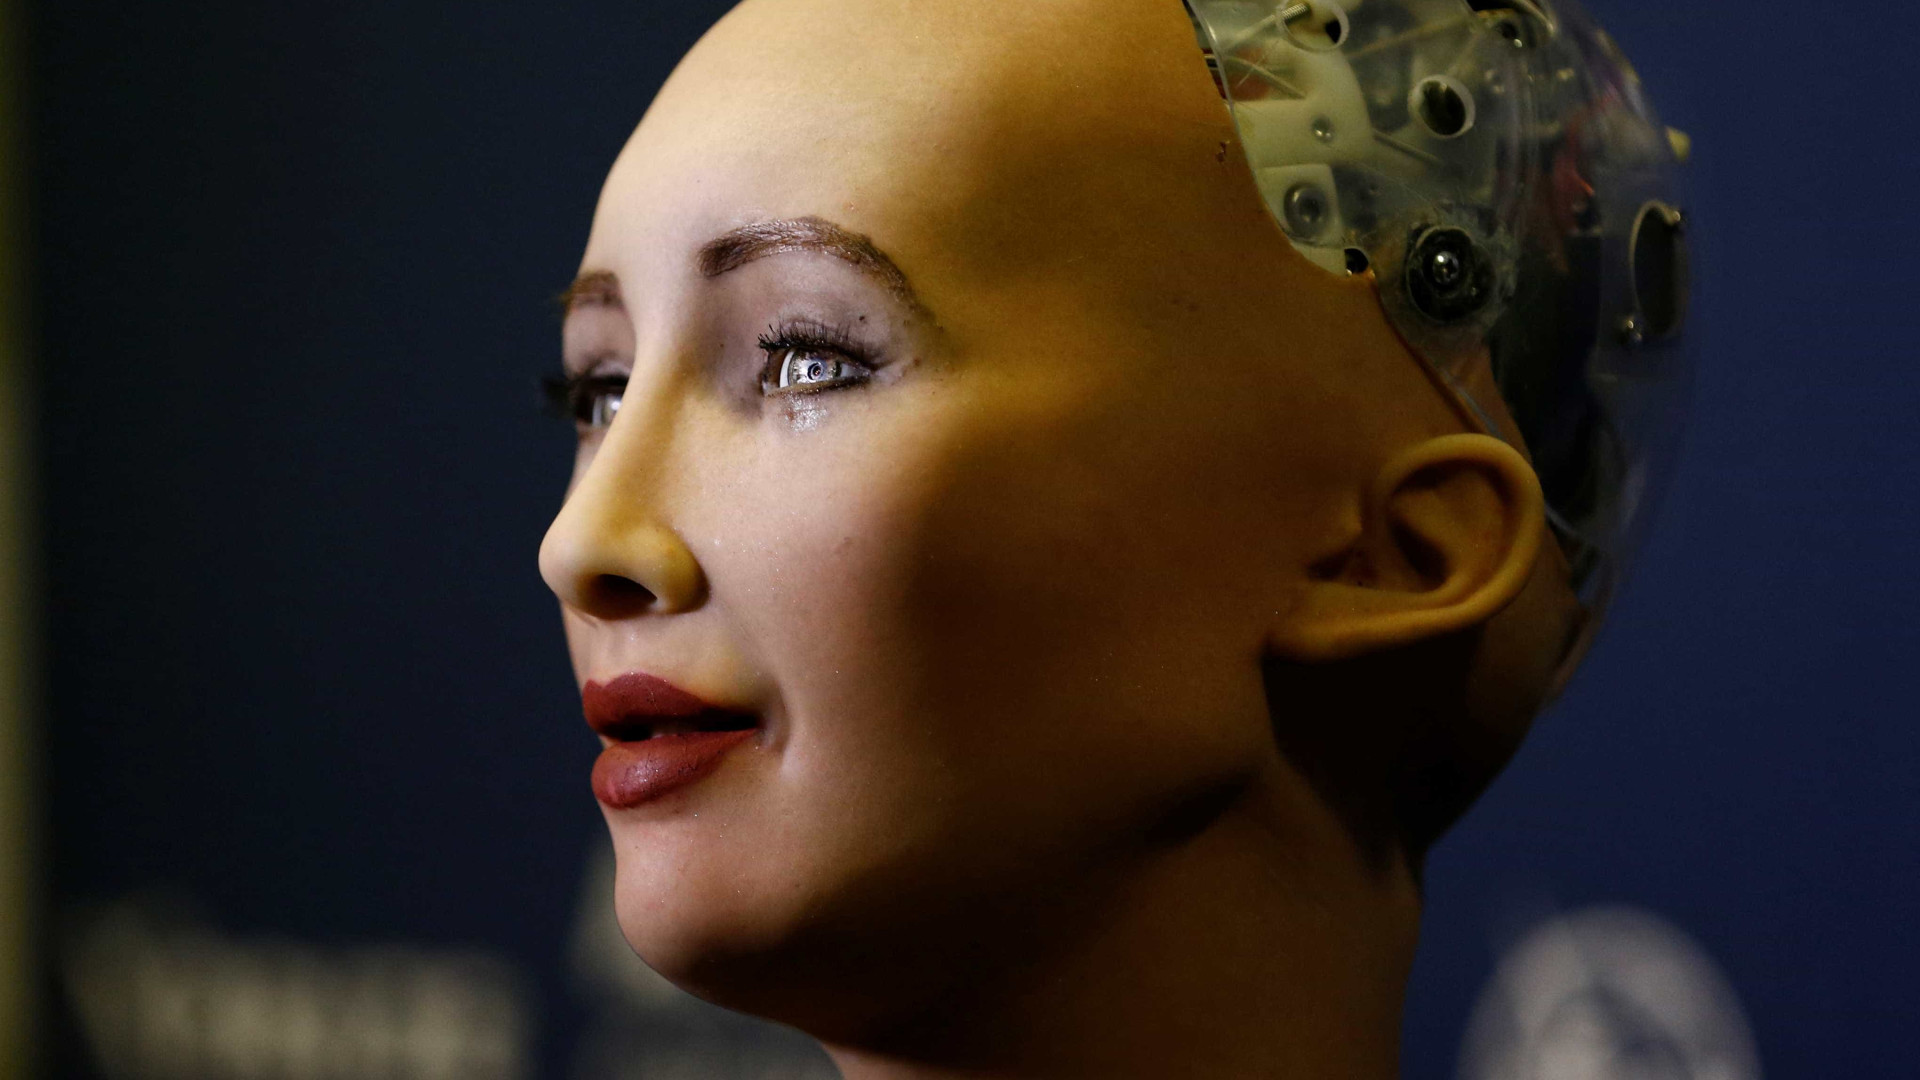 Inteligência Artificial vai nos destruir? Robôs respondem